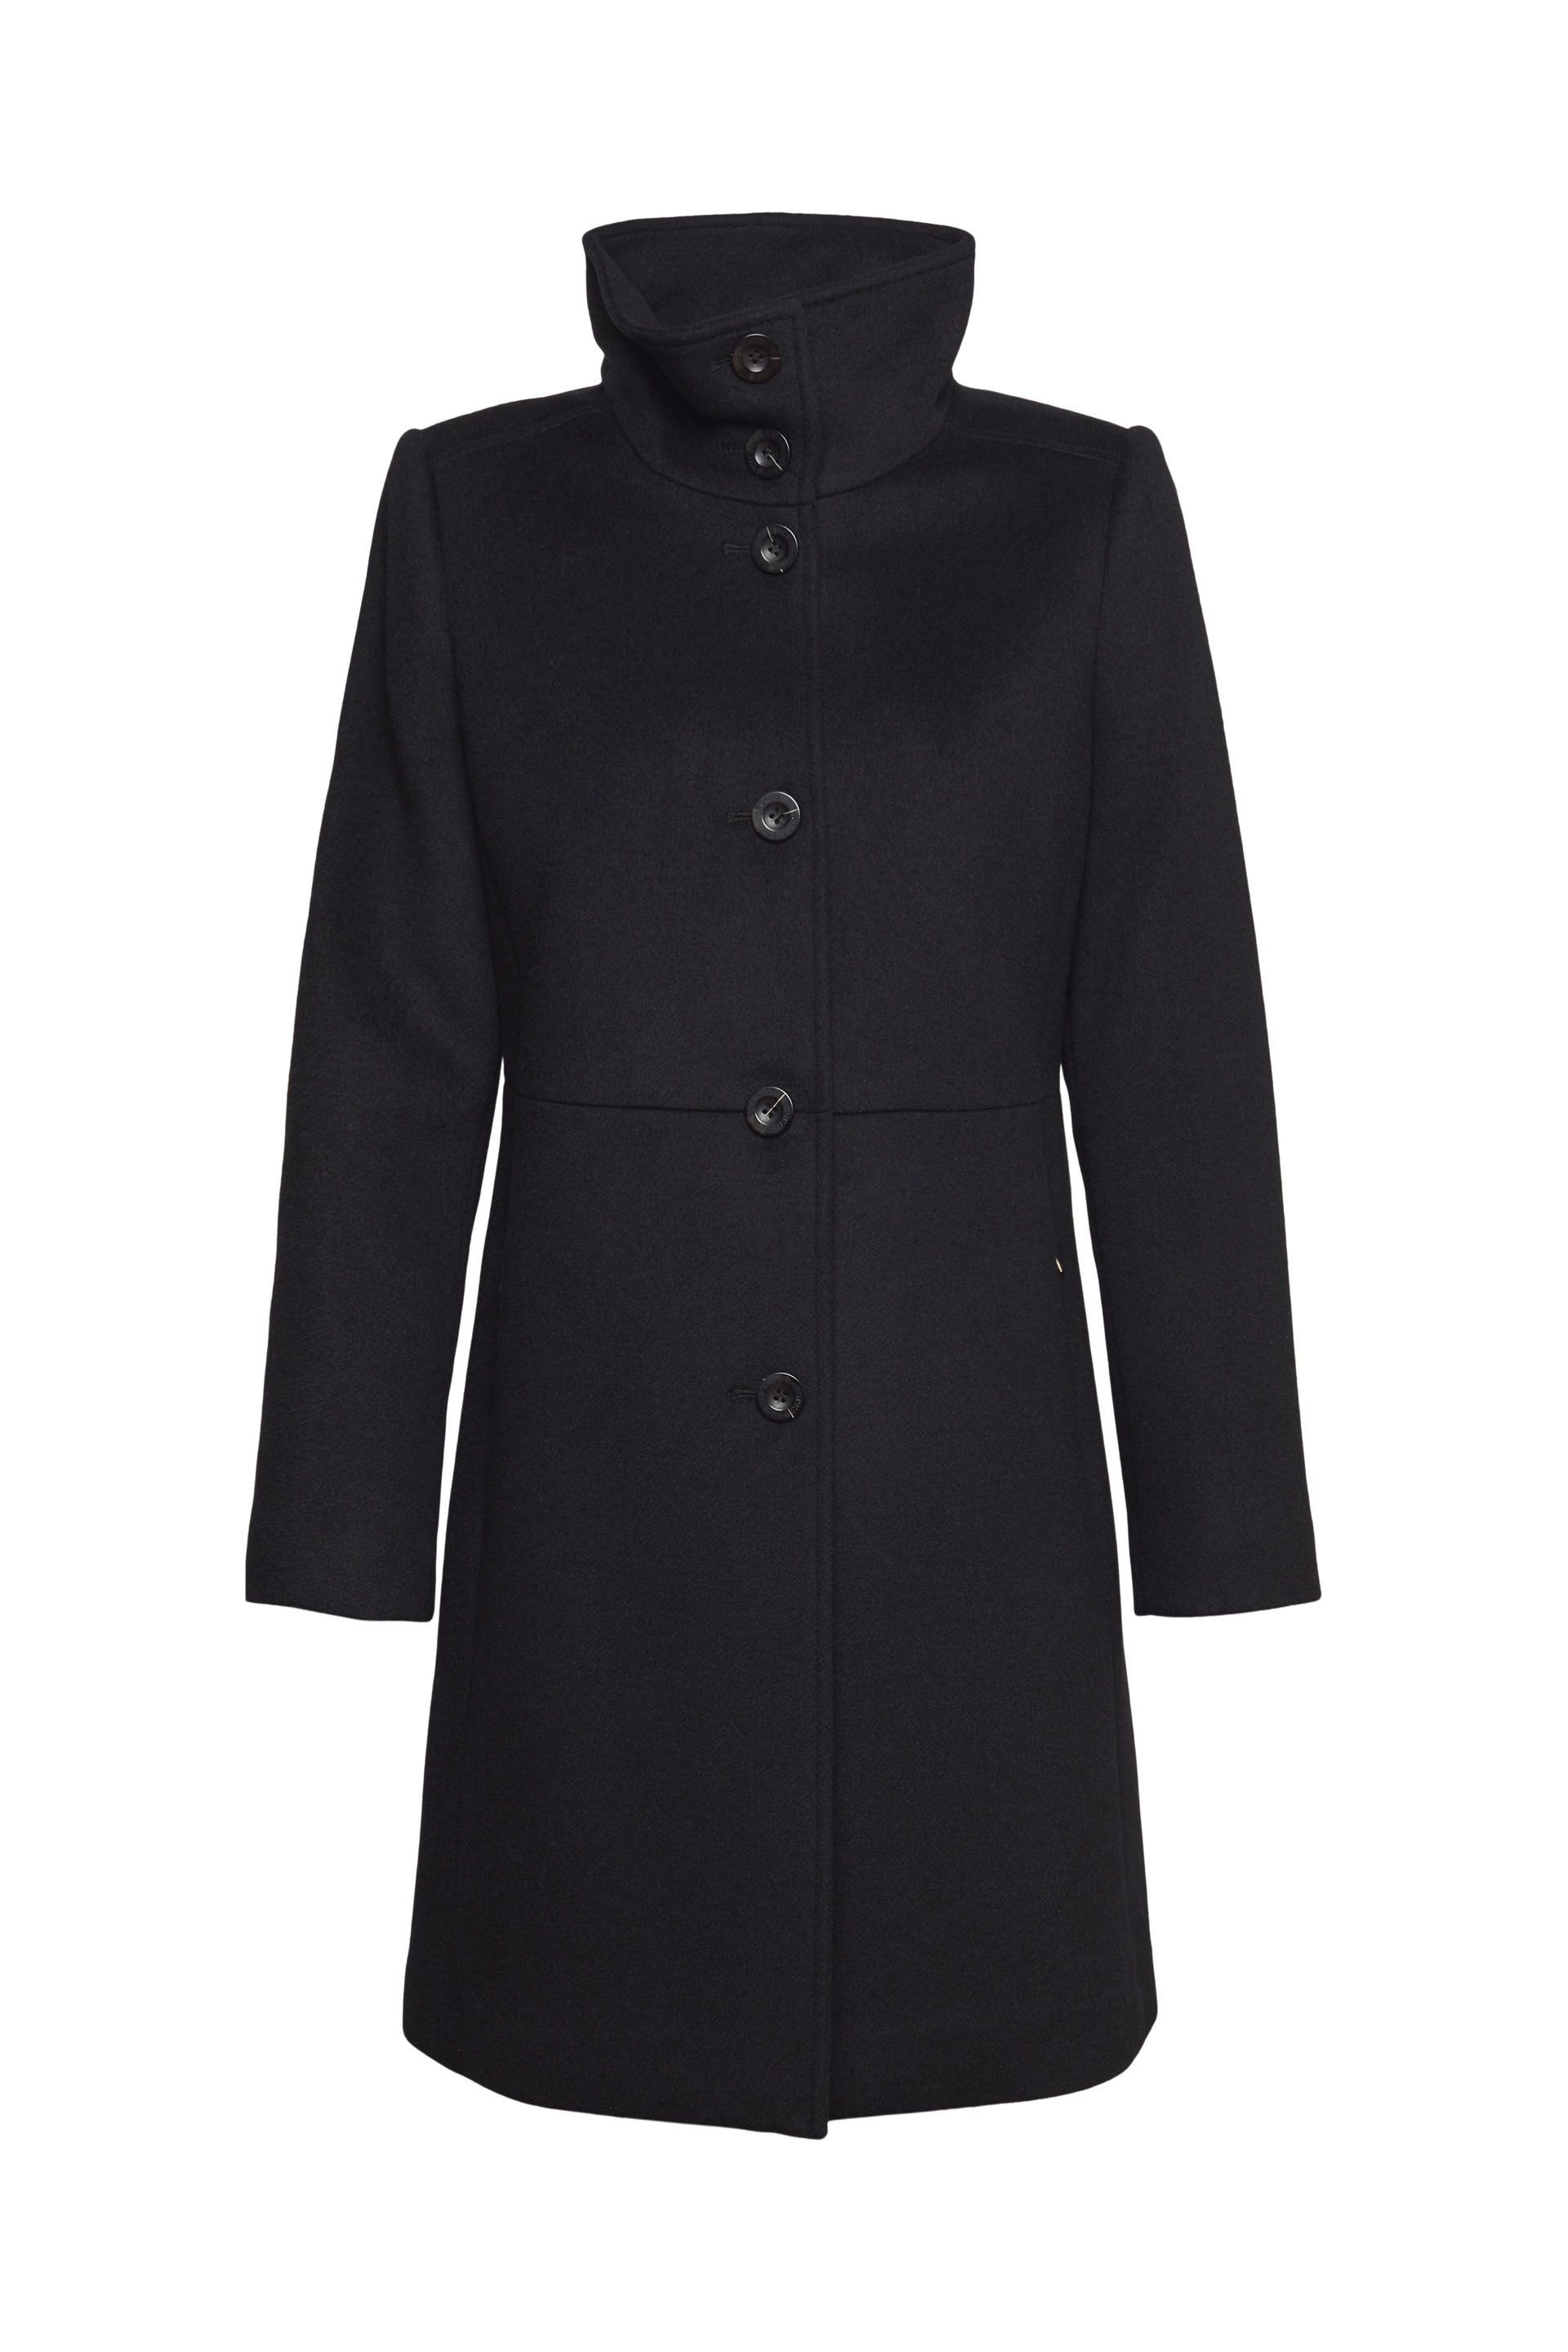 Coat in wool blend, Black, large image number 0